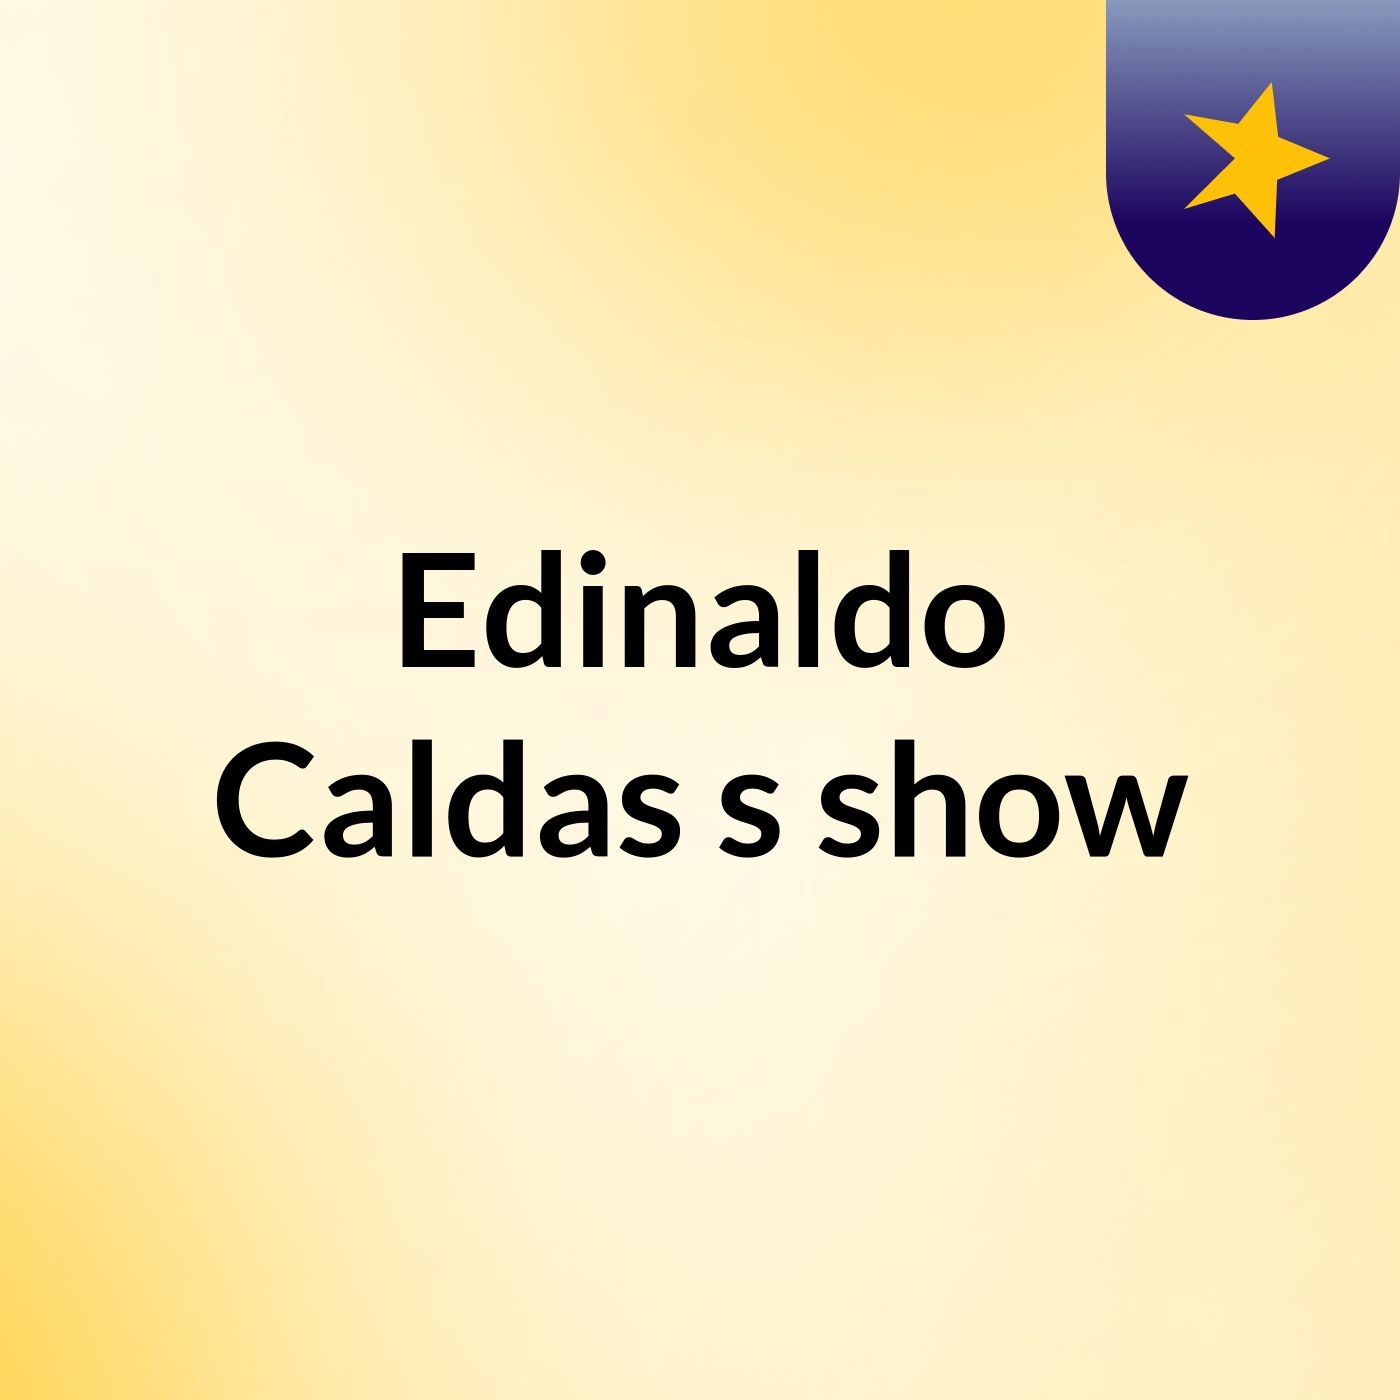 Edinaldo Caldas's show